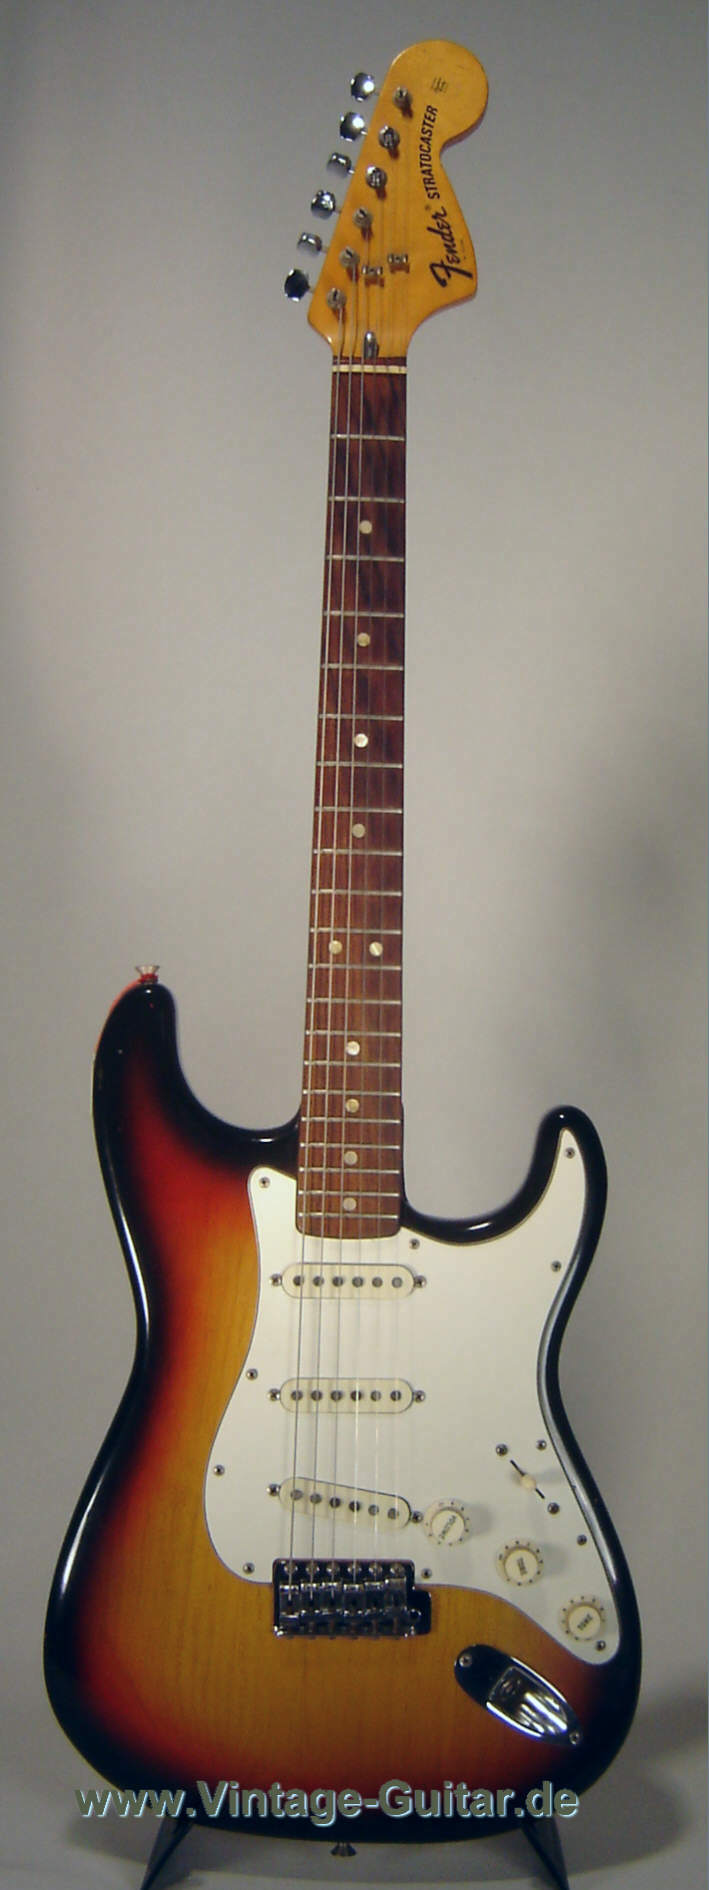 Fender_Stratocaster_1973_sunburst-1.jpg